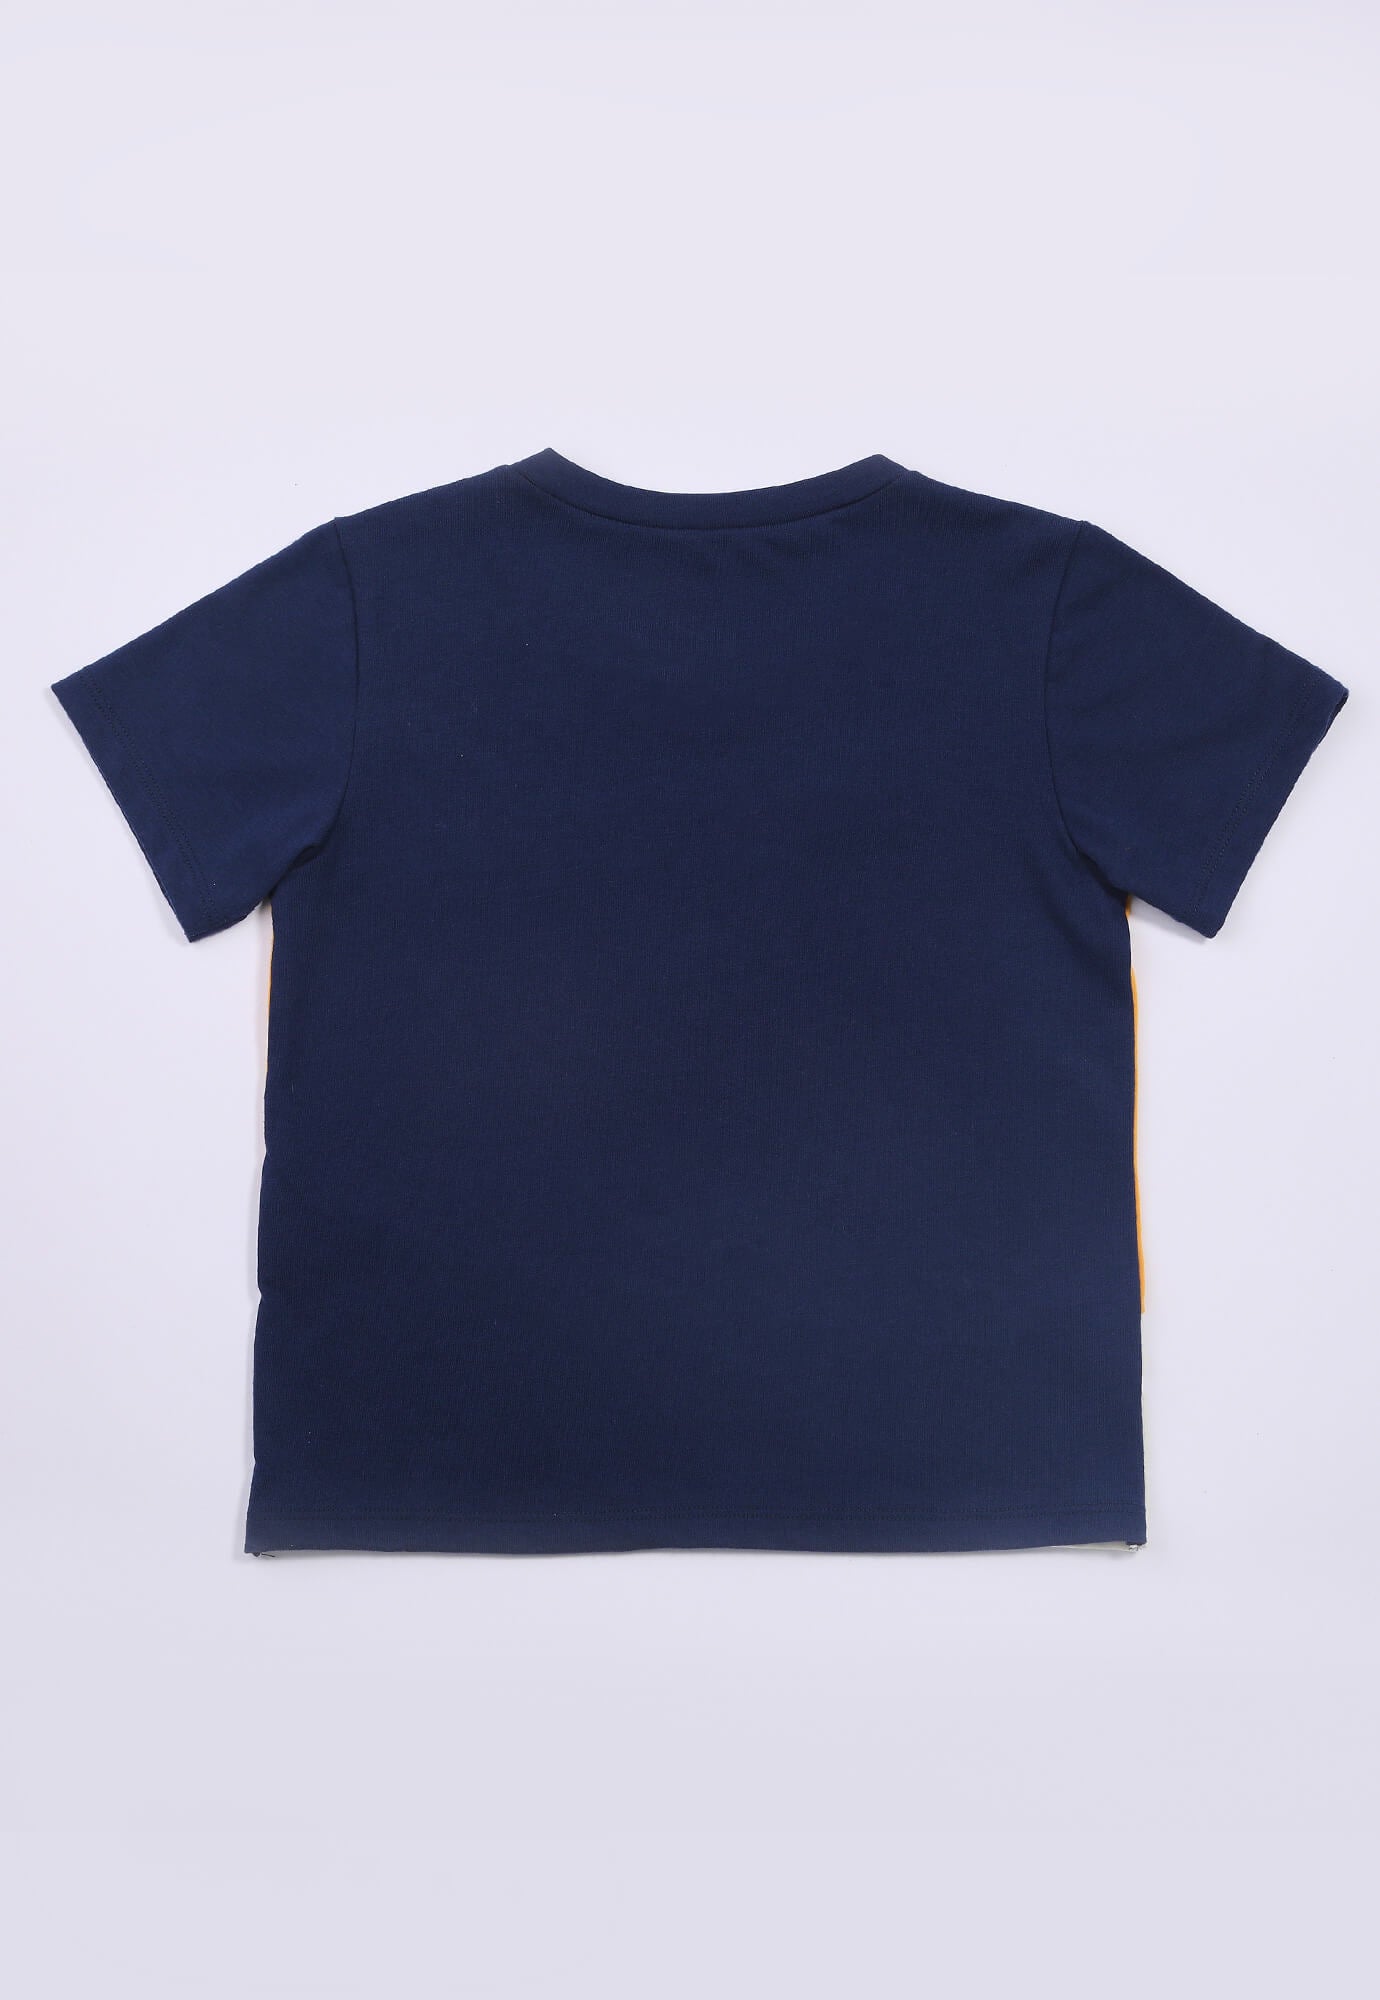 Camiseta azul en bloques para bebe niño